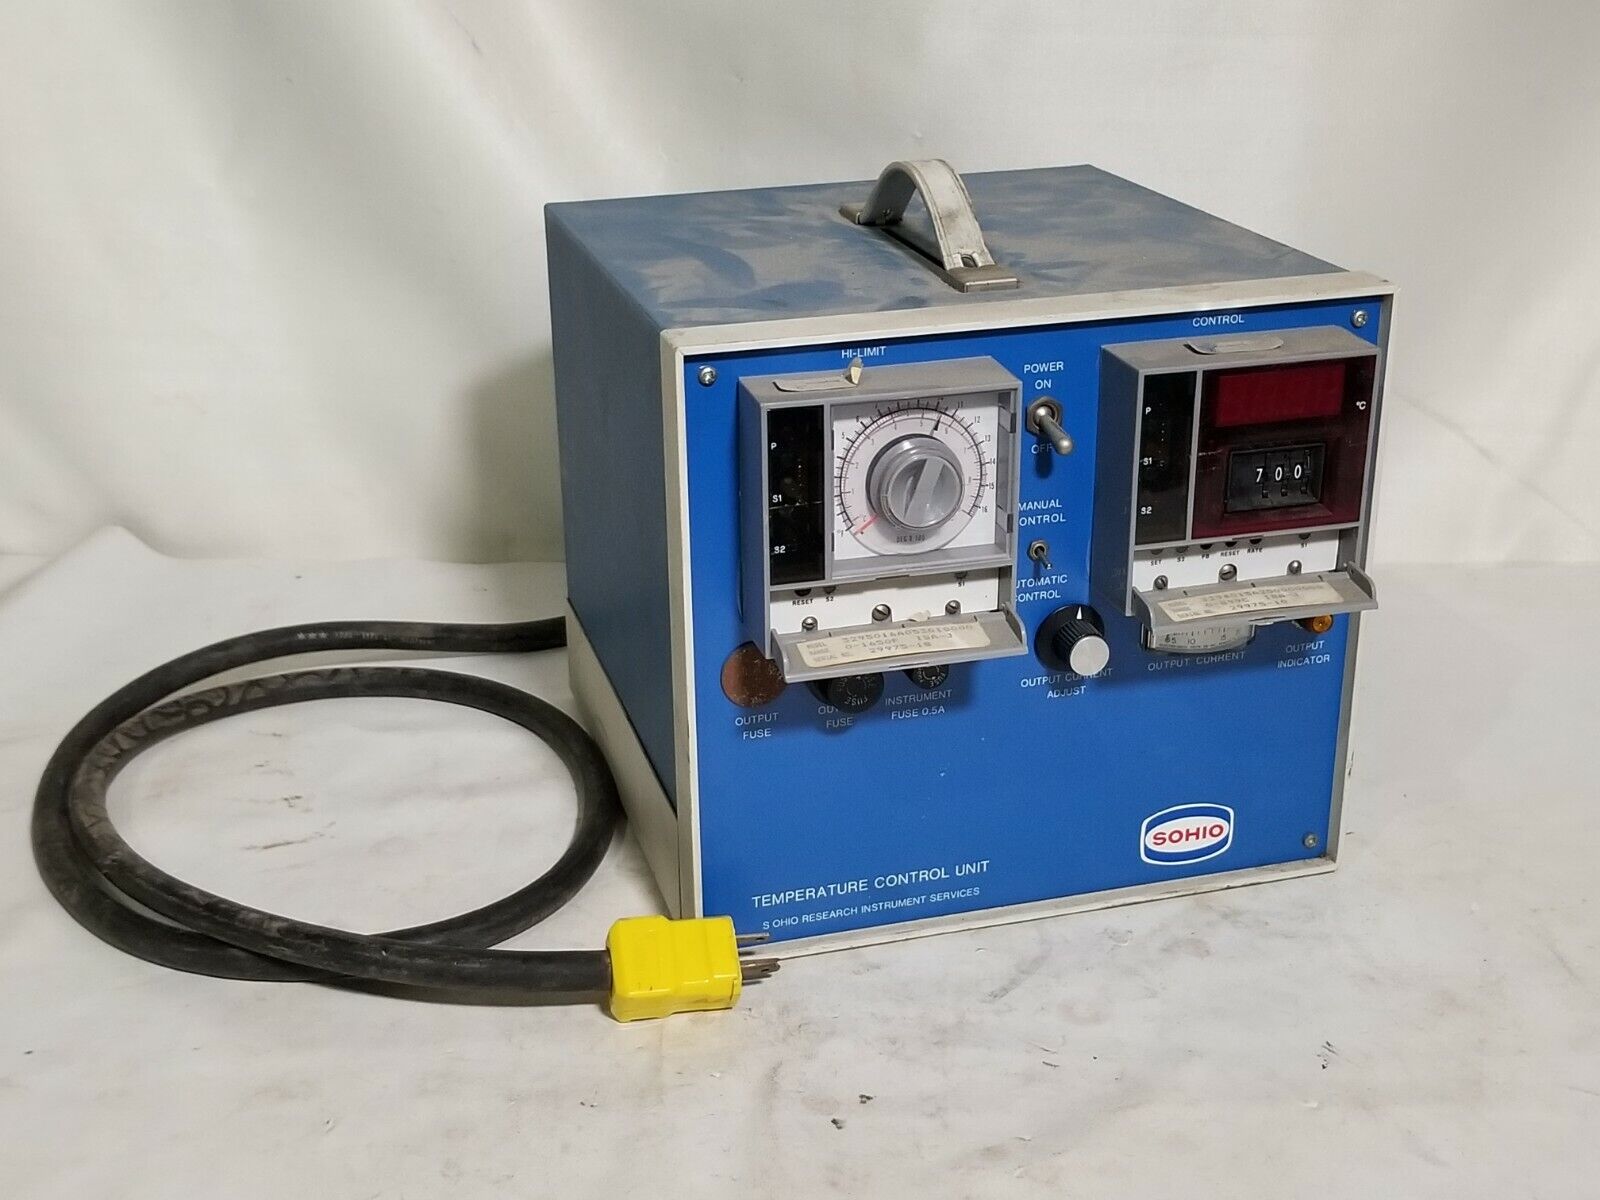 Sohio Temperature Control Unit CJ-063 Range 0-1650F ISA-J